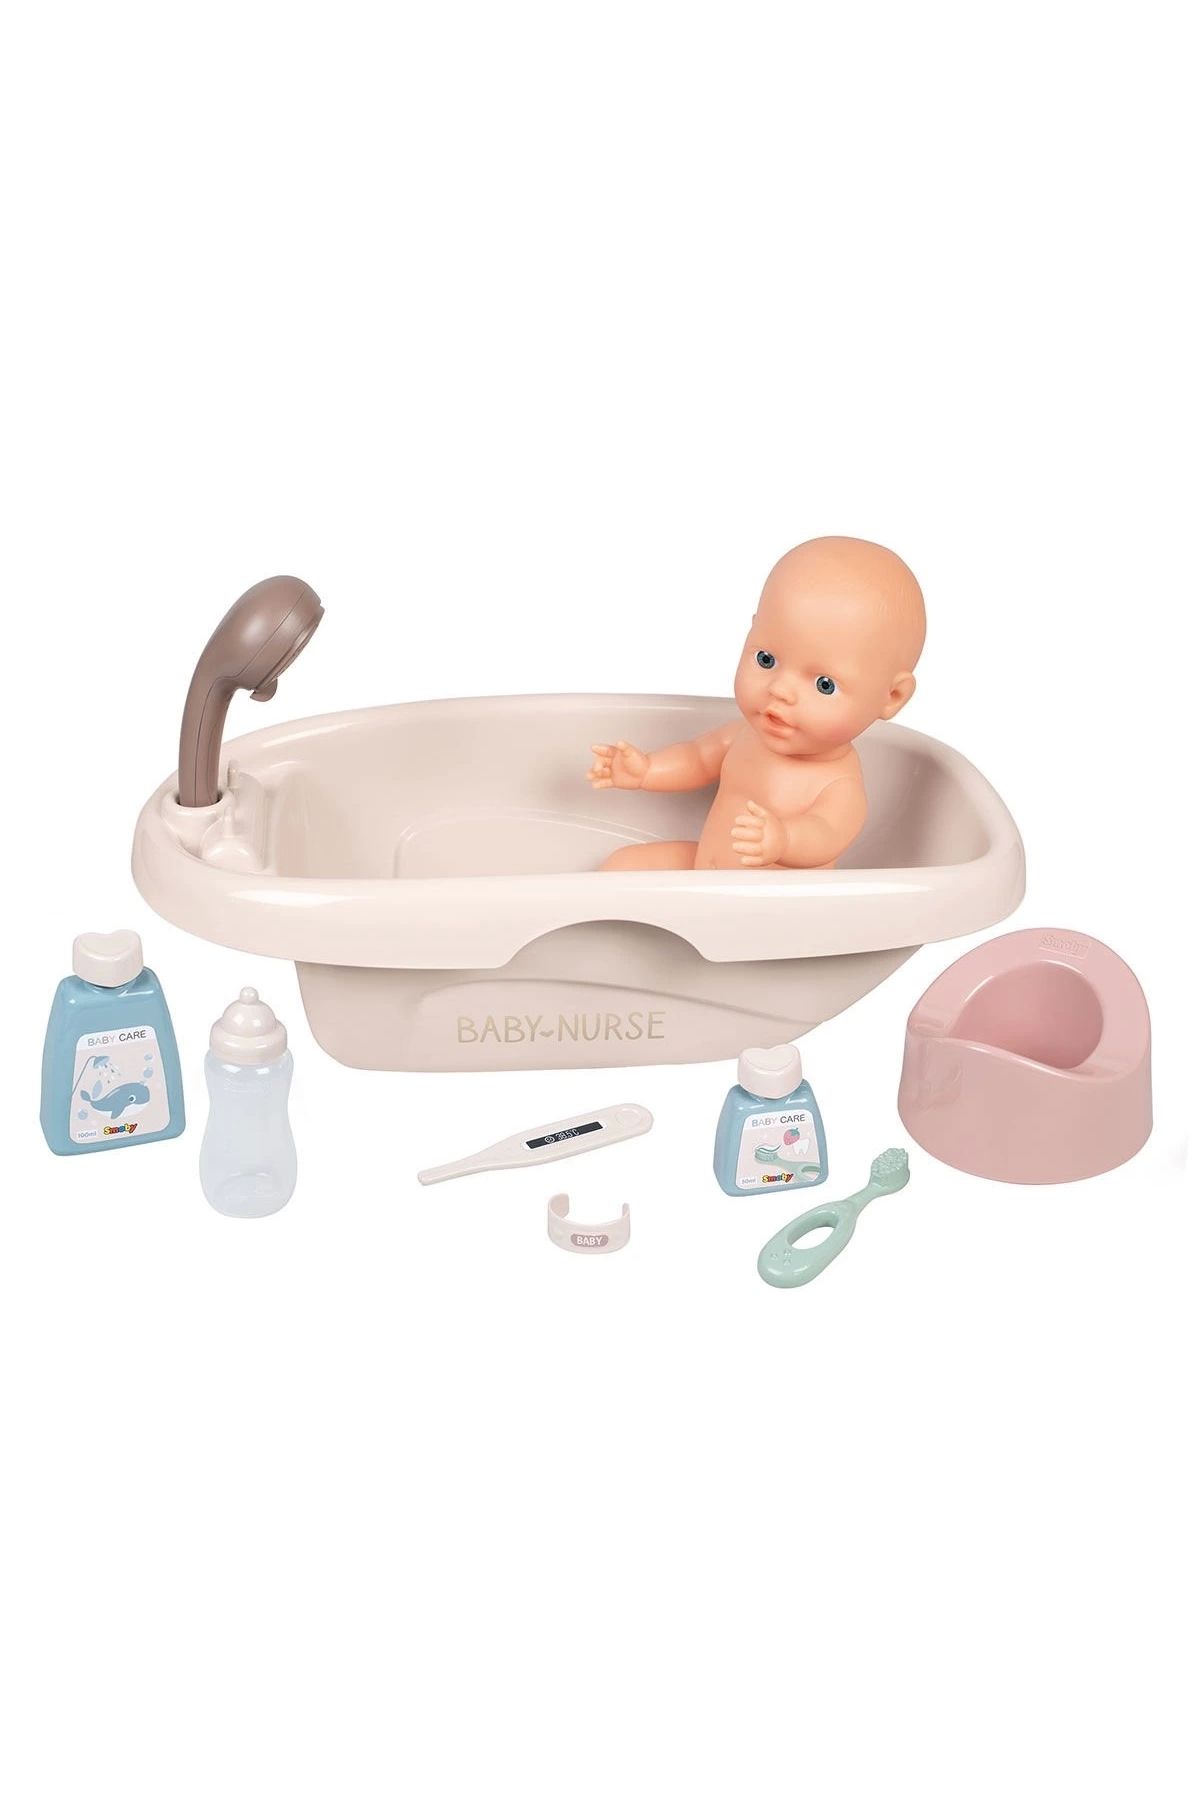 alisverisdevi 7600220366 Baby Nurse Oyuncak Bebek Banyo Seti ve Aksesuarları